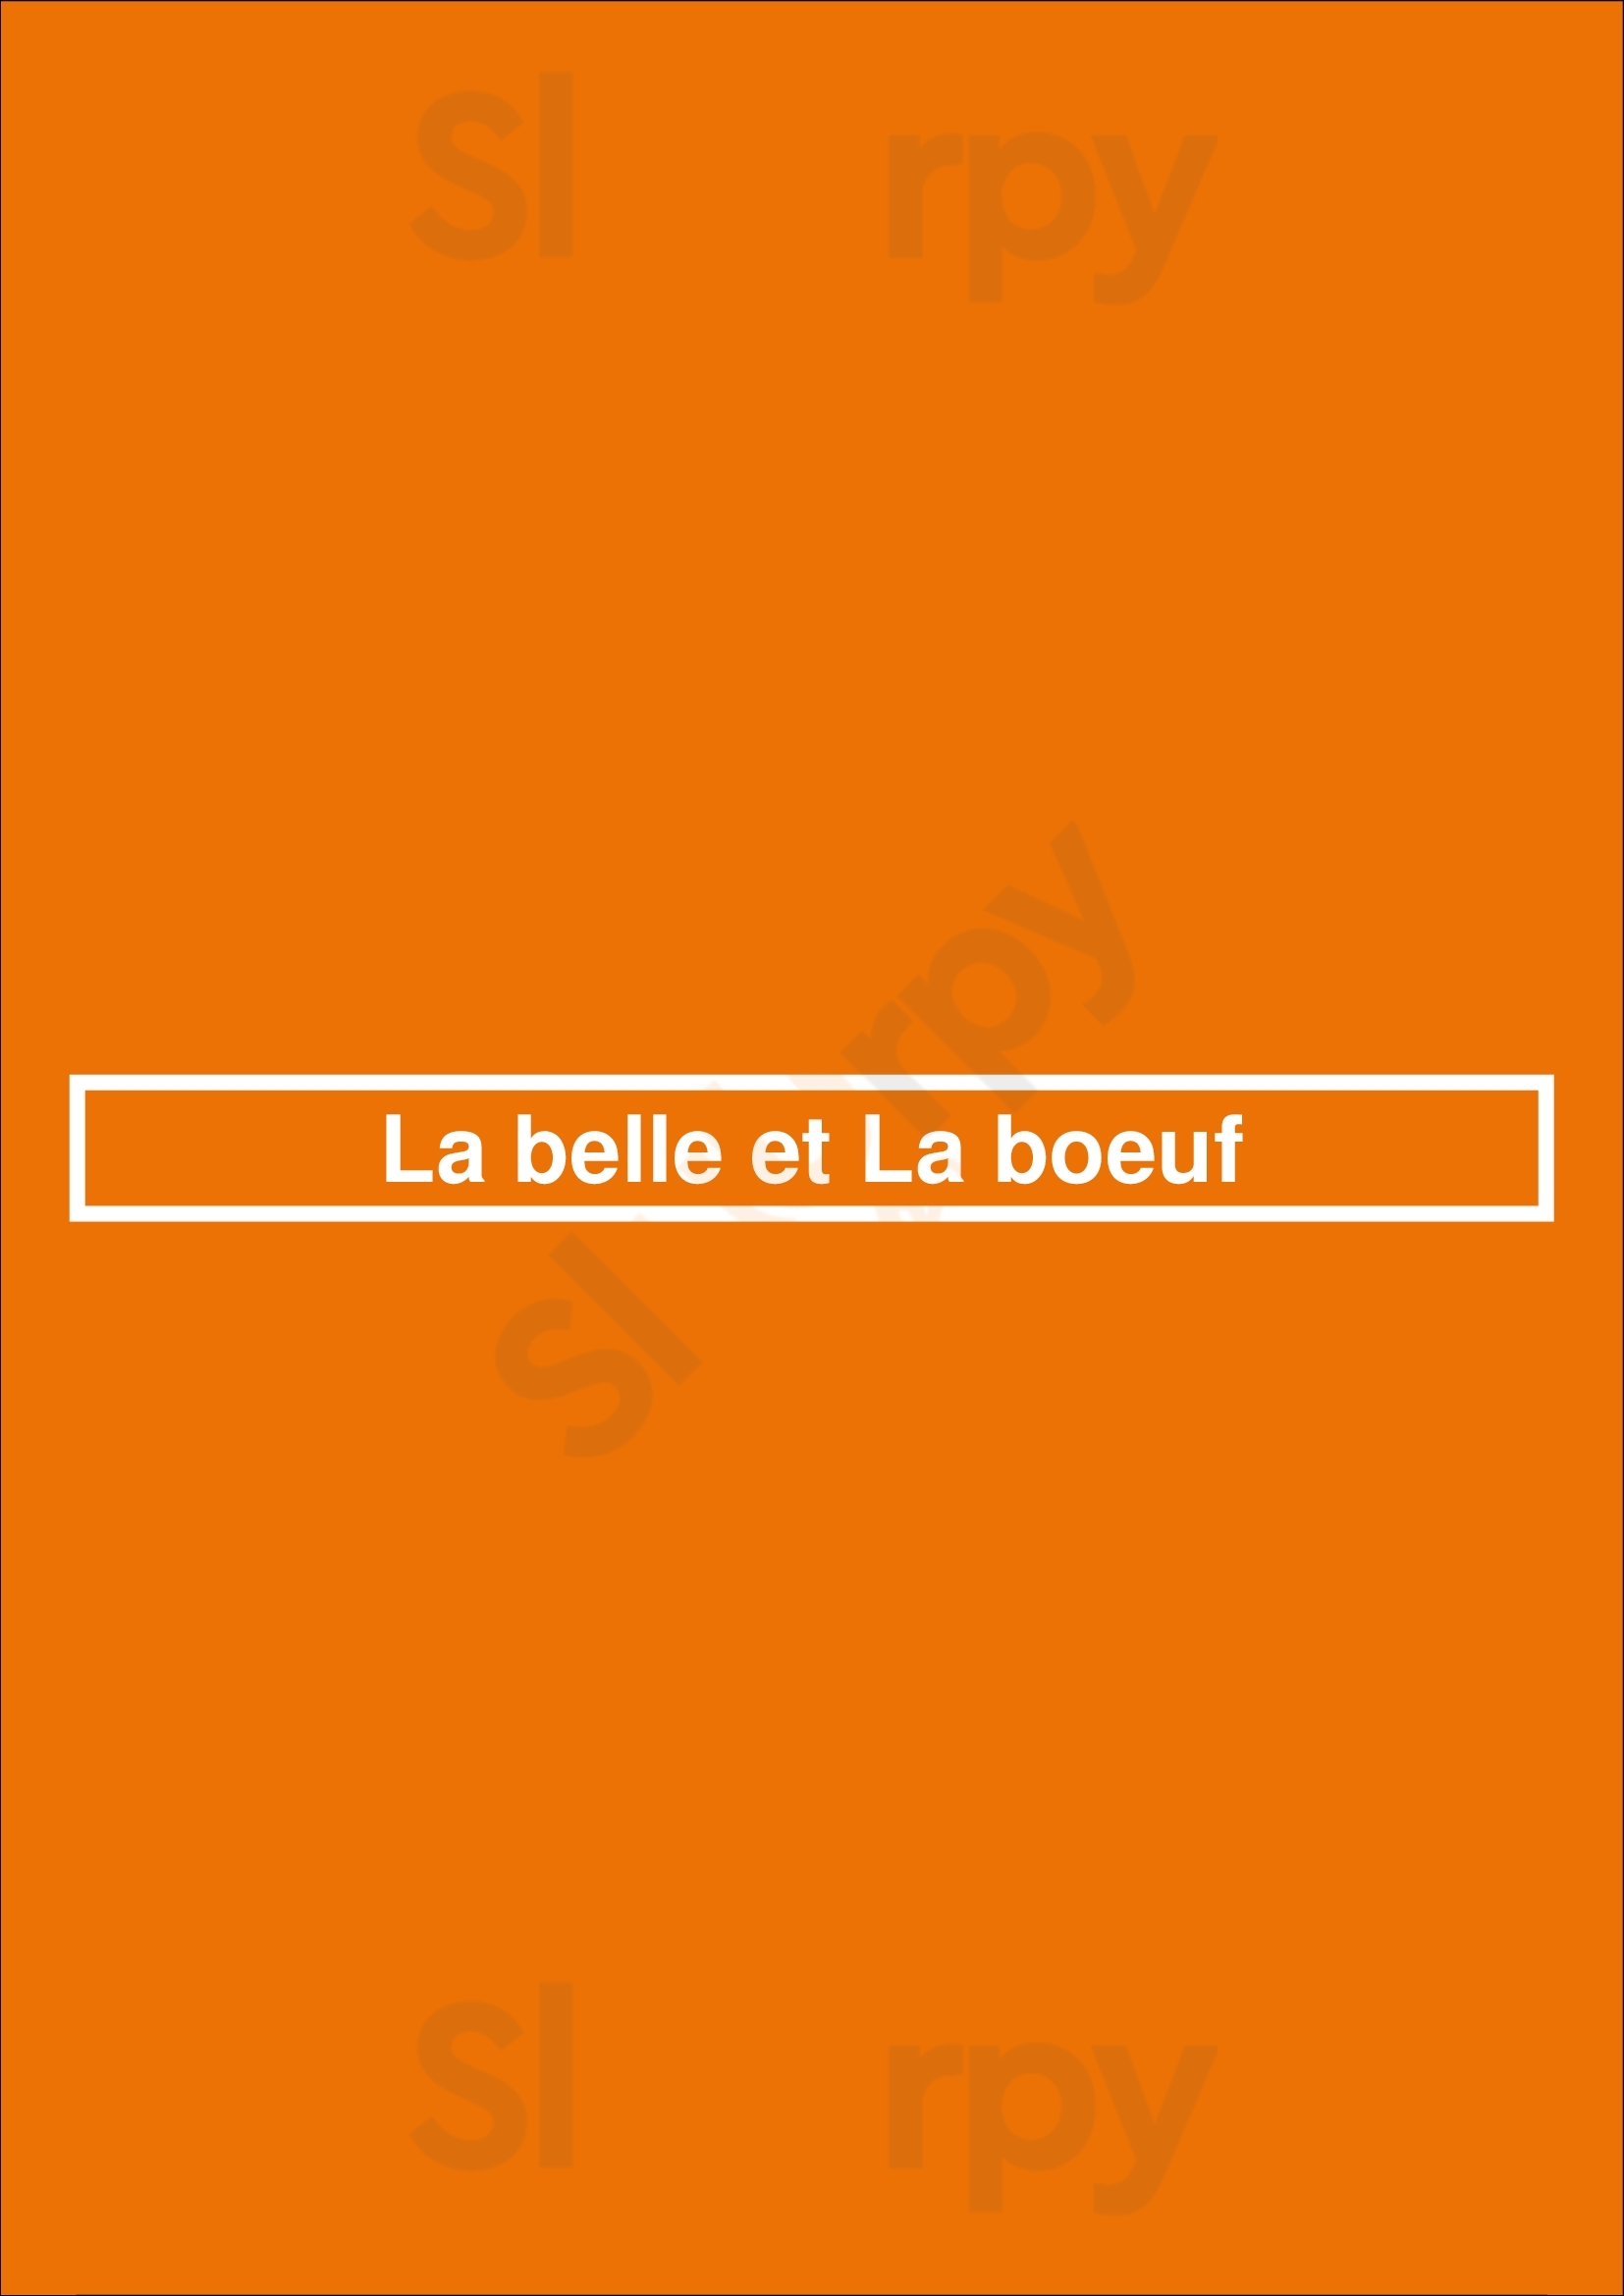 La Belle Et La Boeuf Saint-Jean-sur-Richelieu Menu - 1